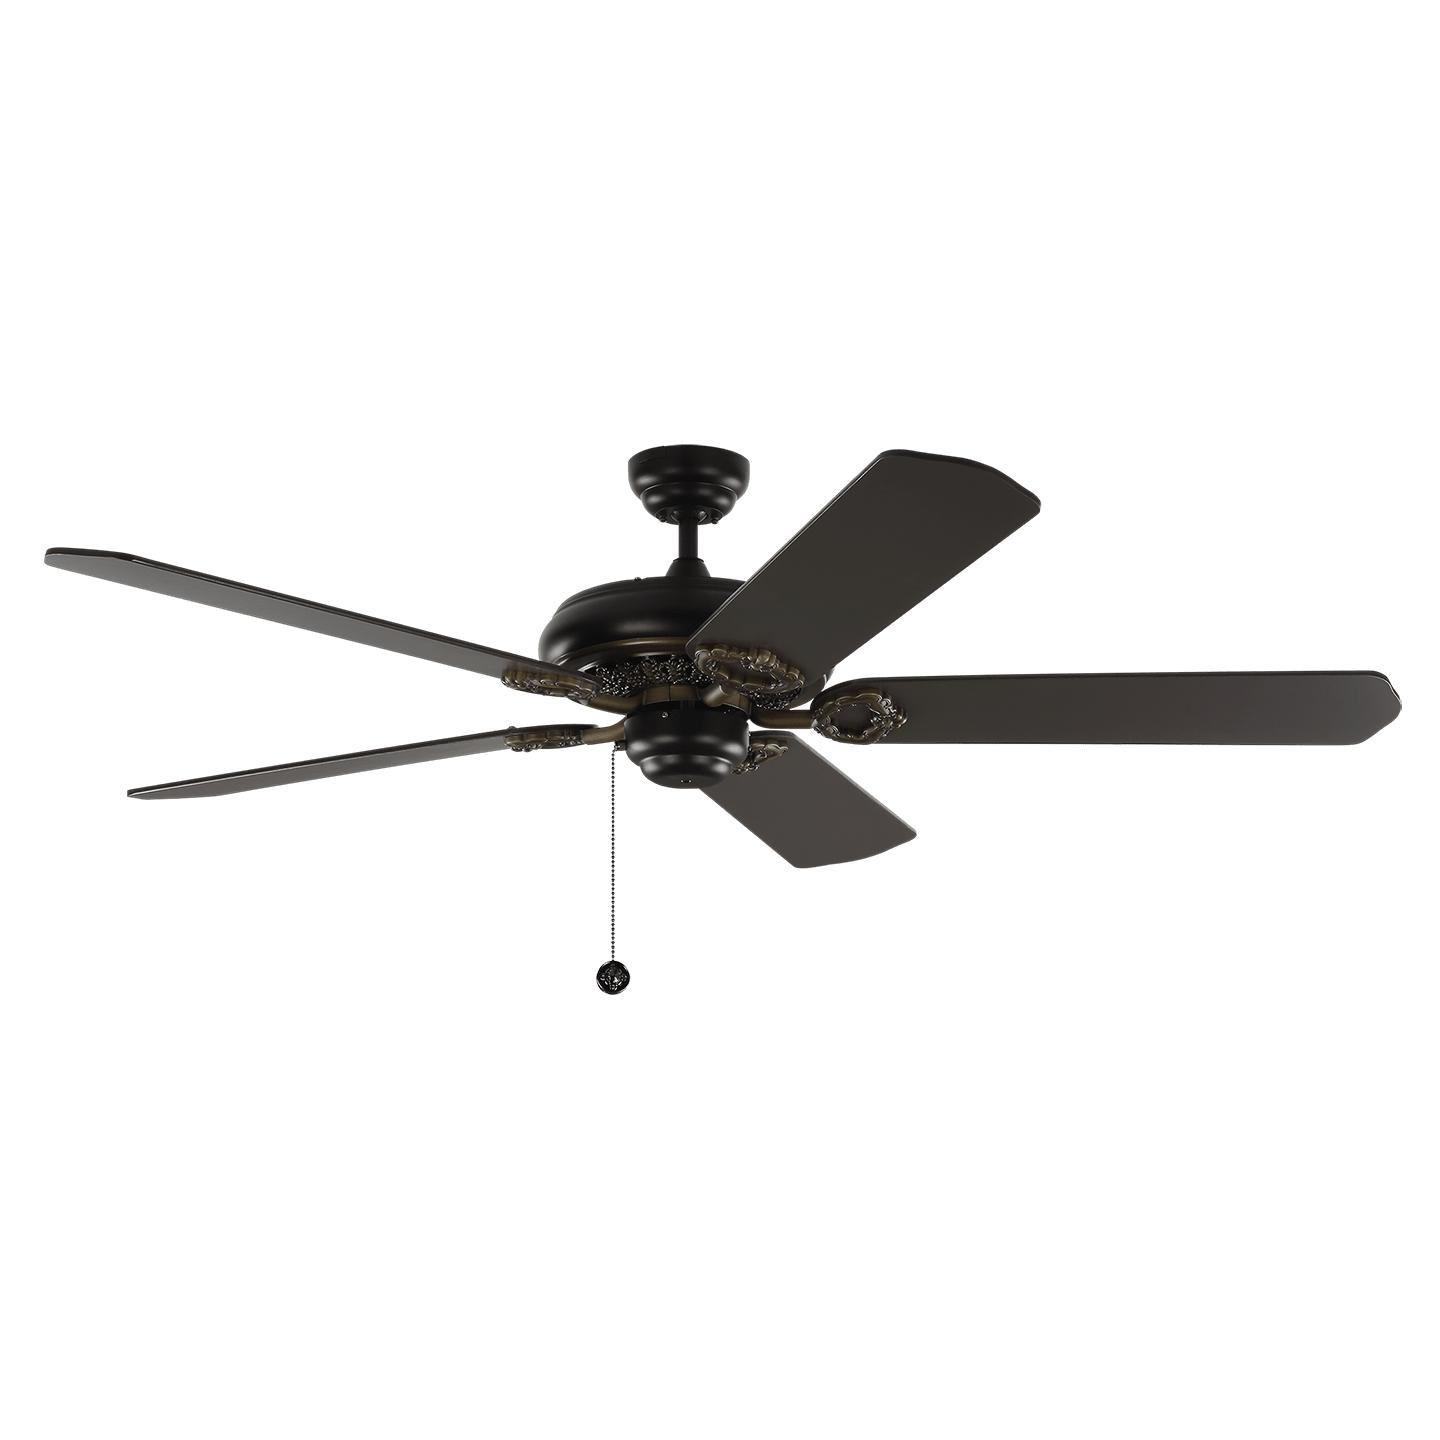 Купить Потолочный вентилятор York 60" Ceiling Fan в интернет-магазине roooms.ru